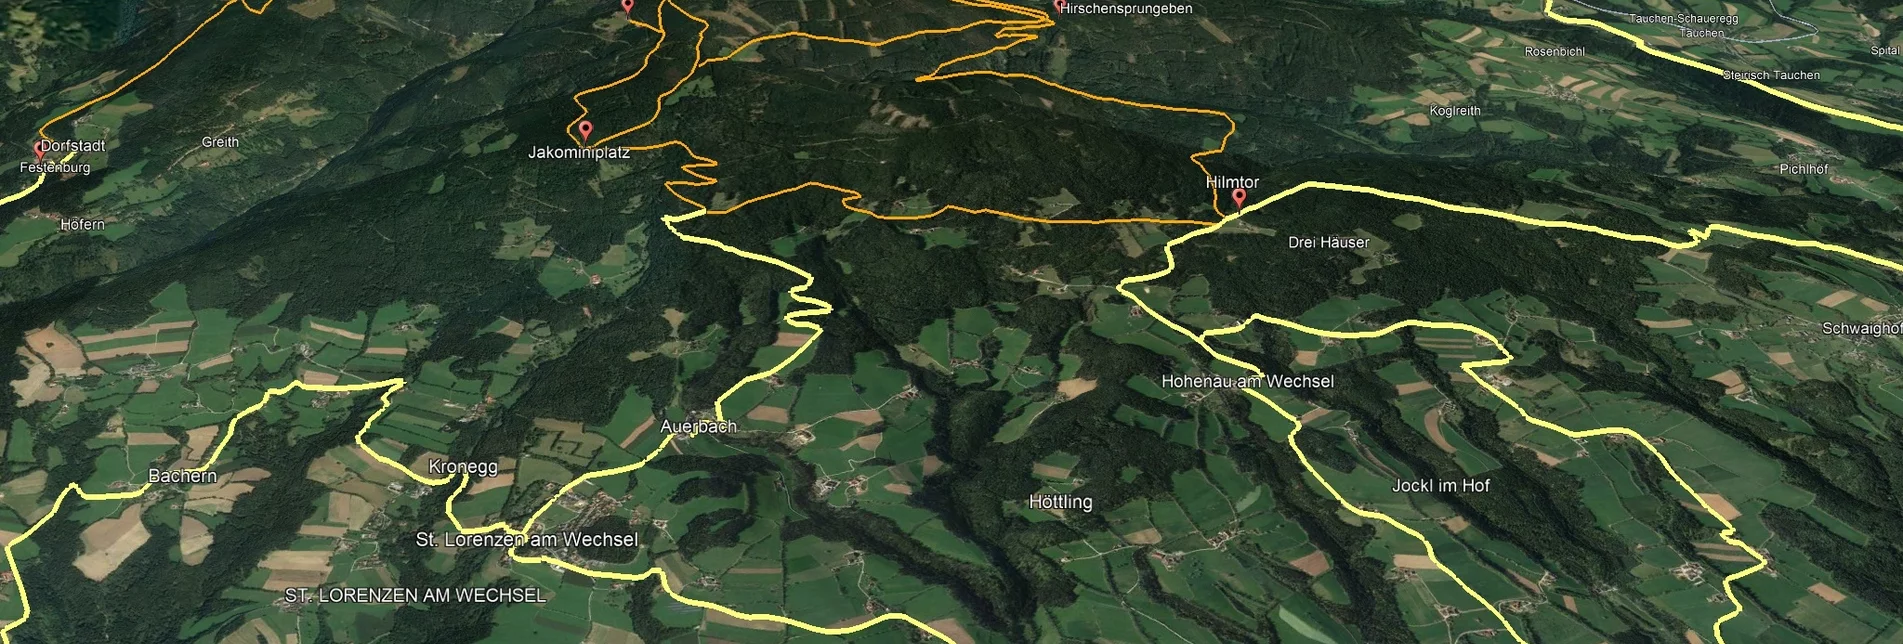 Mountain Biking PREVIEW Styrian Wexl Trails - Fichtenhof Route - Touren-Impression #1 | © Verein Tourismusentwicklung Steirischer Wechsel